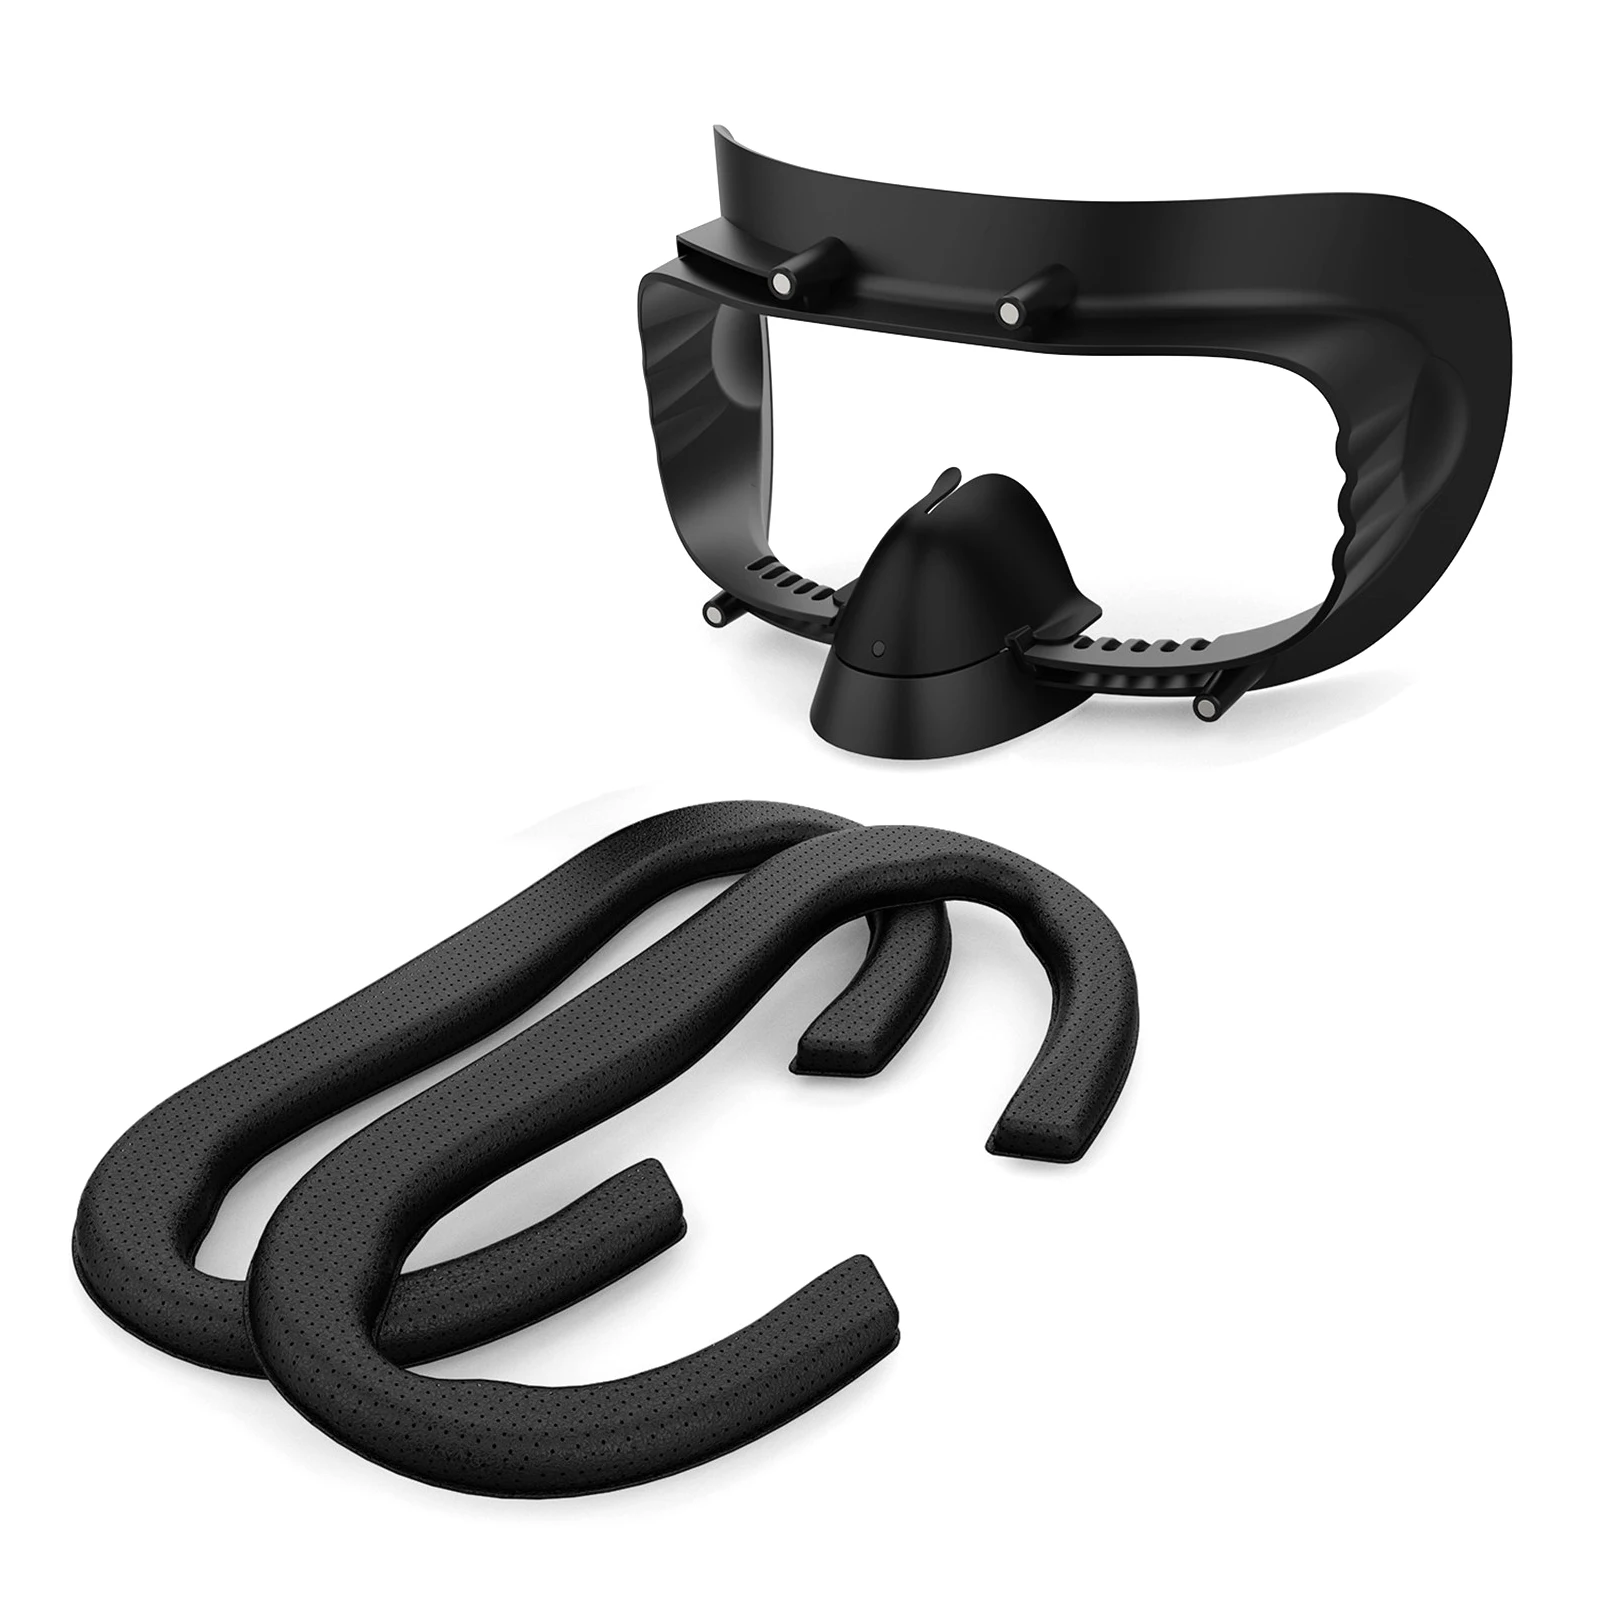 3 ב 1 עבור HP Reverb G2 VR פנים ממשק סוגר קצף רפידות החלפת Pad אוזניות שחור אבזרים כיסוי VR עור